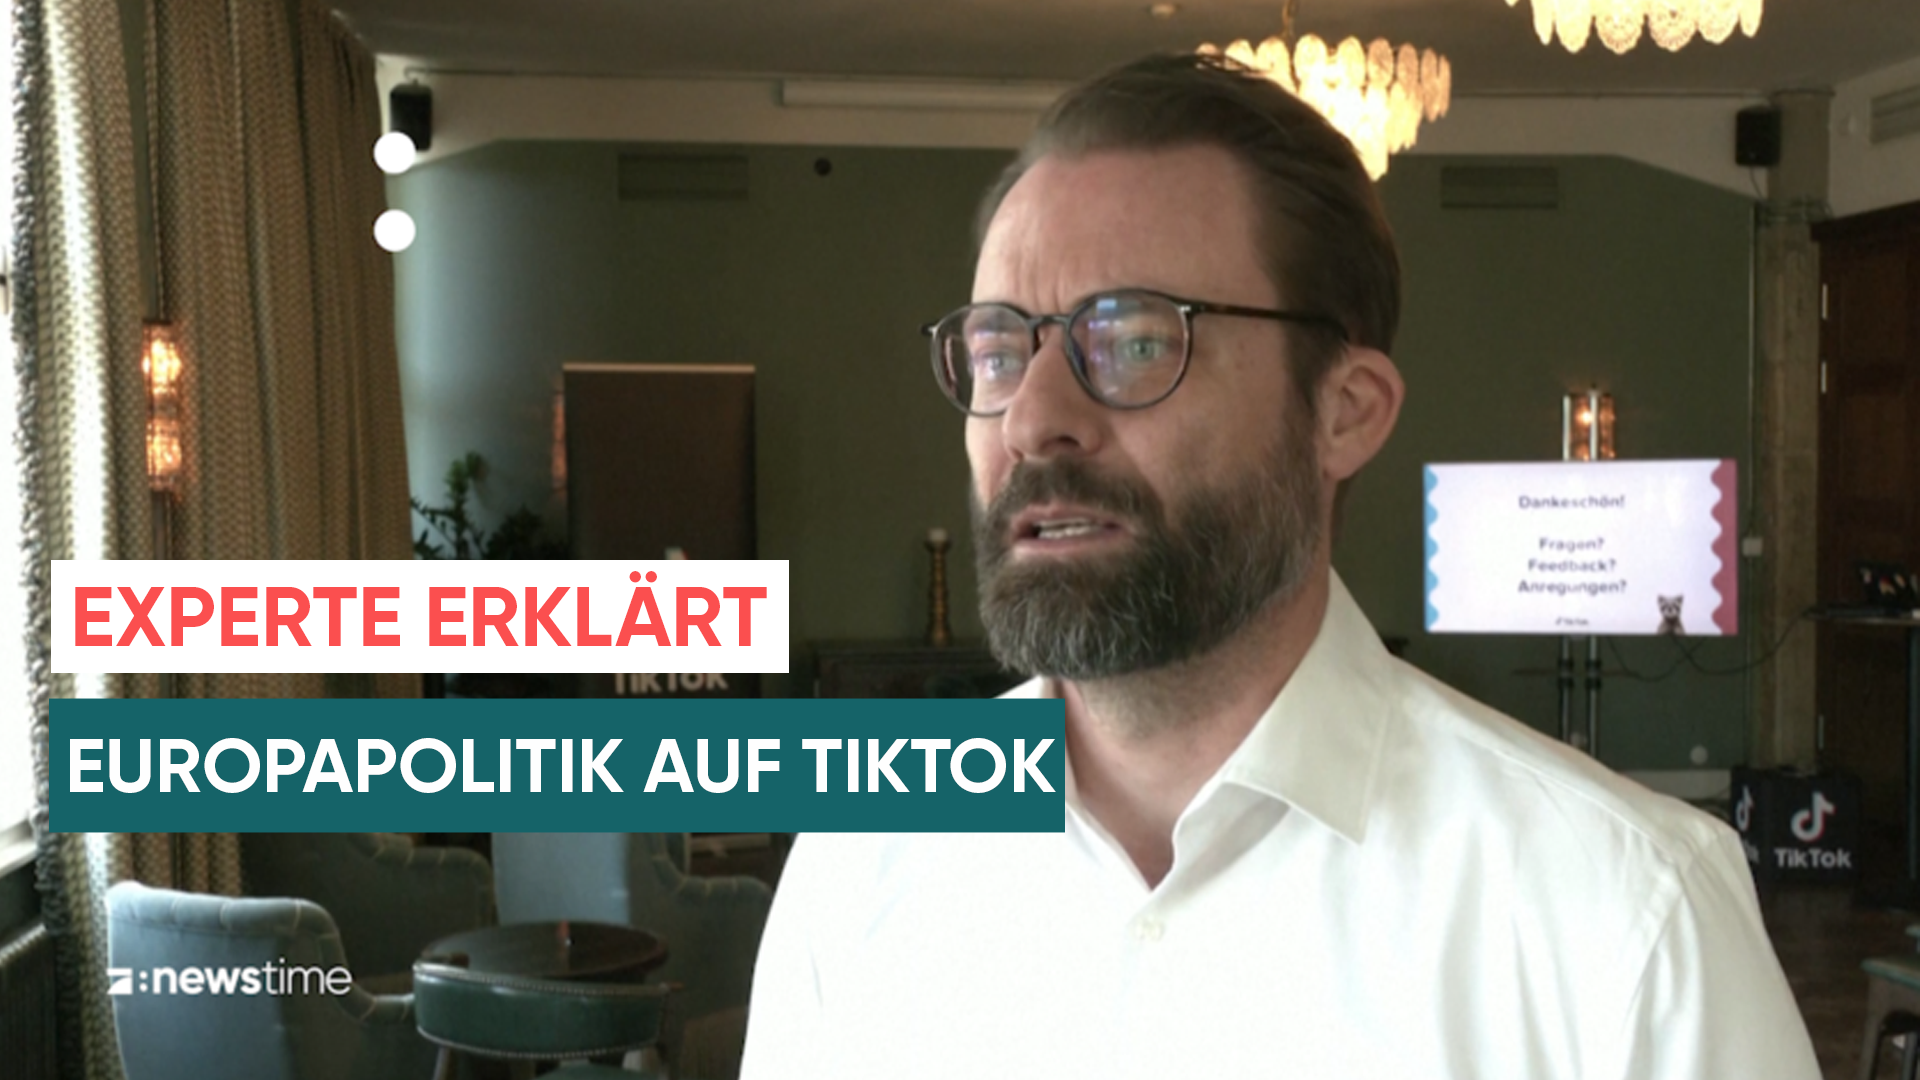 "40.000 Sicherheitsexperten und Faktencheck": So will TikTok Fake News bekämpfen